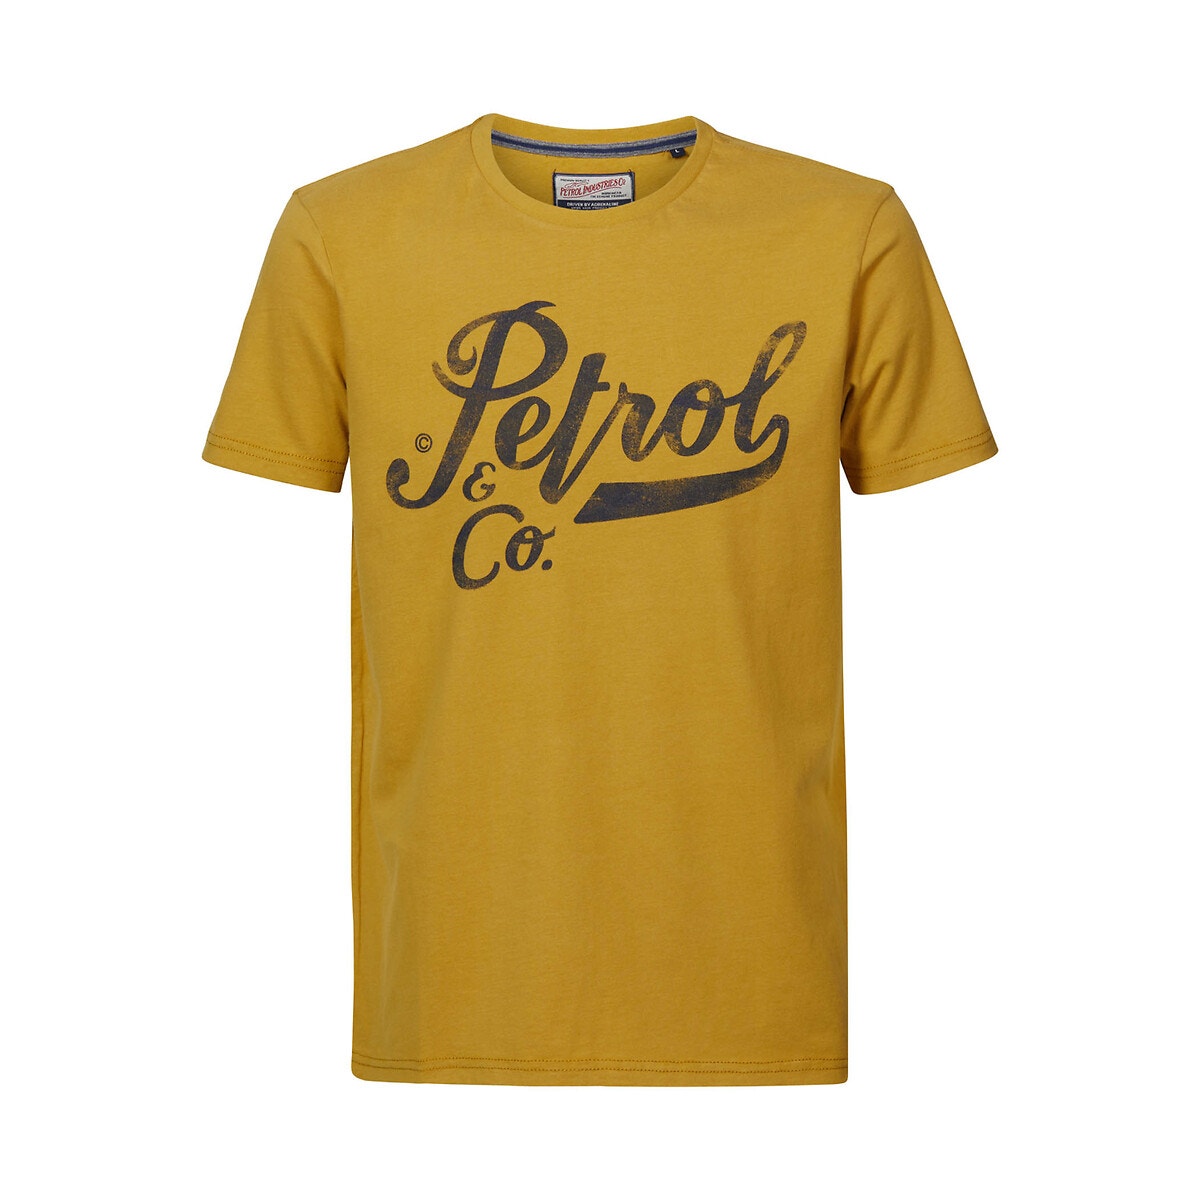 ΑΝΔΡΑΣ | Μπλούζες & Πουκάμισα | T-shirts Κοντομάνικο T-shirt, TSR6020